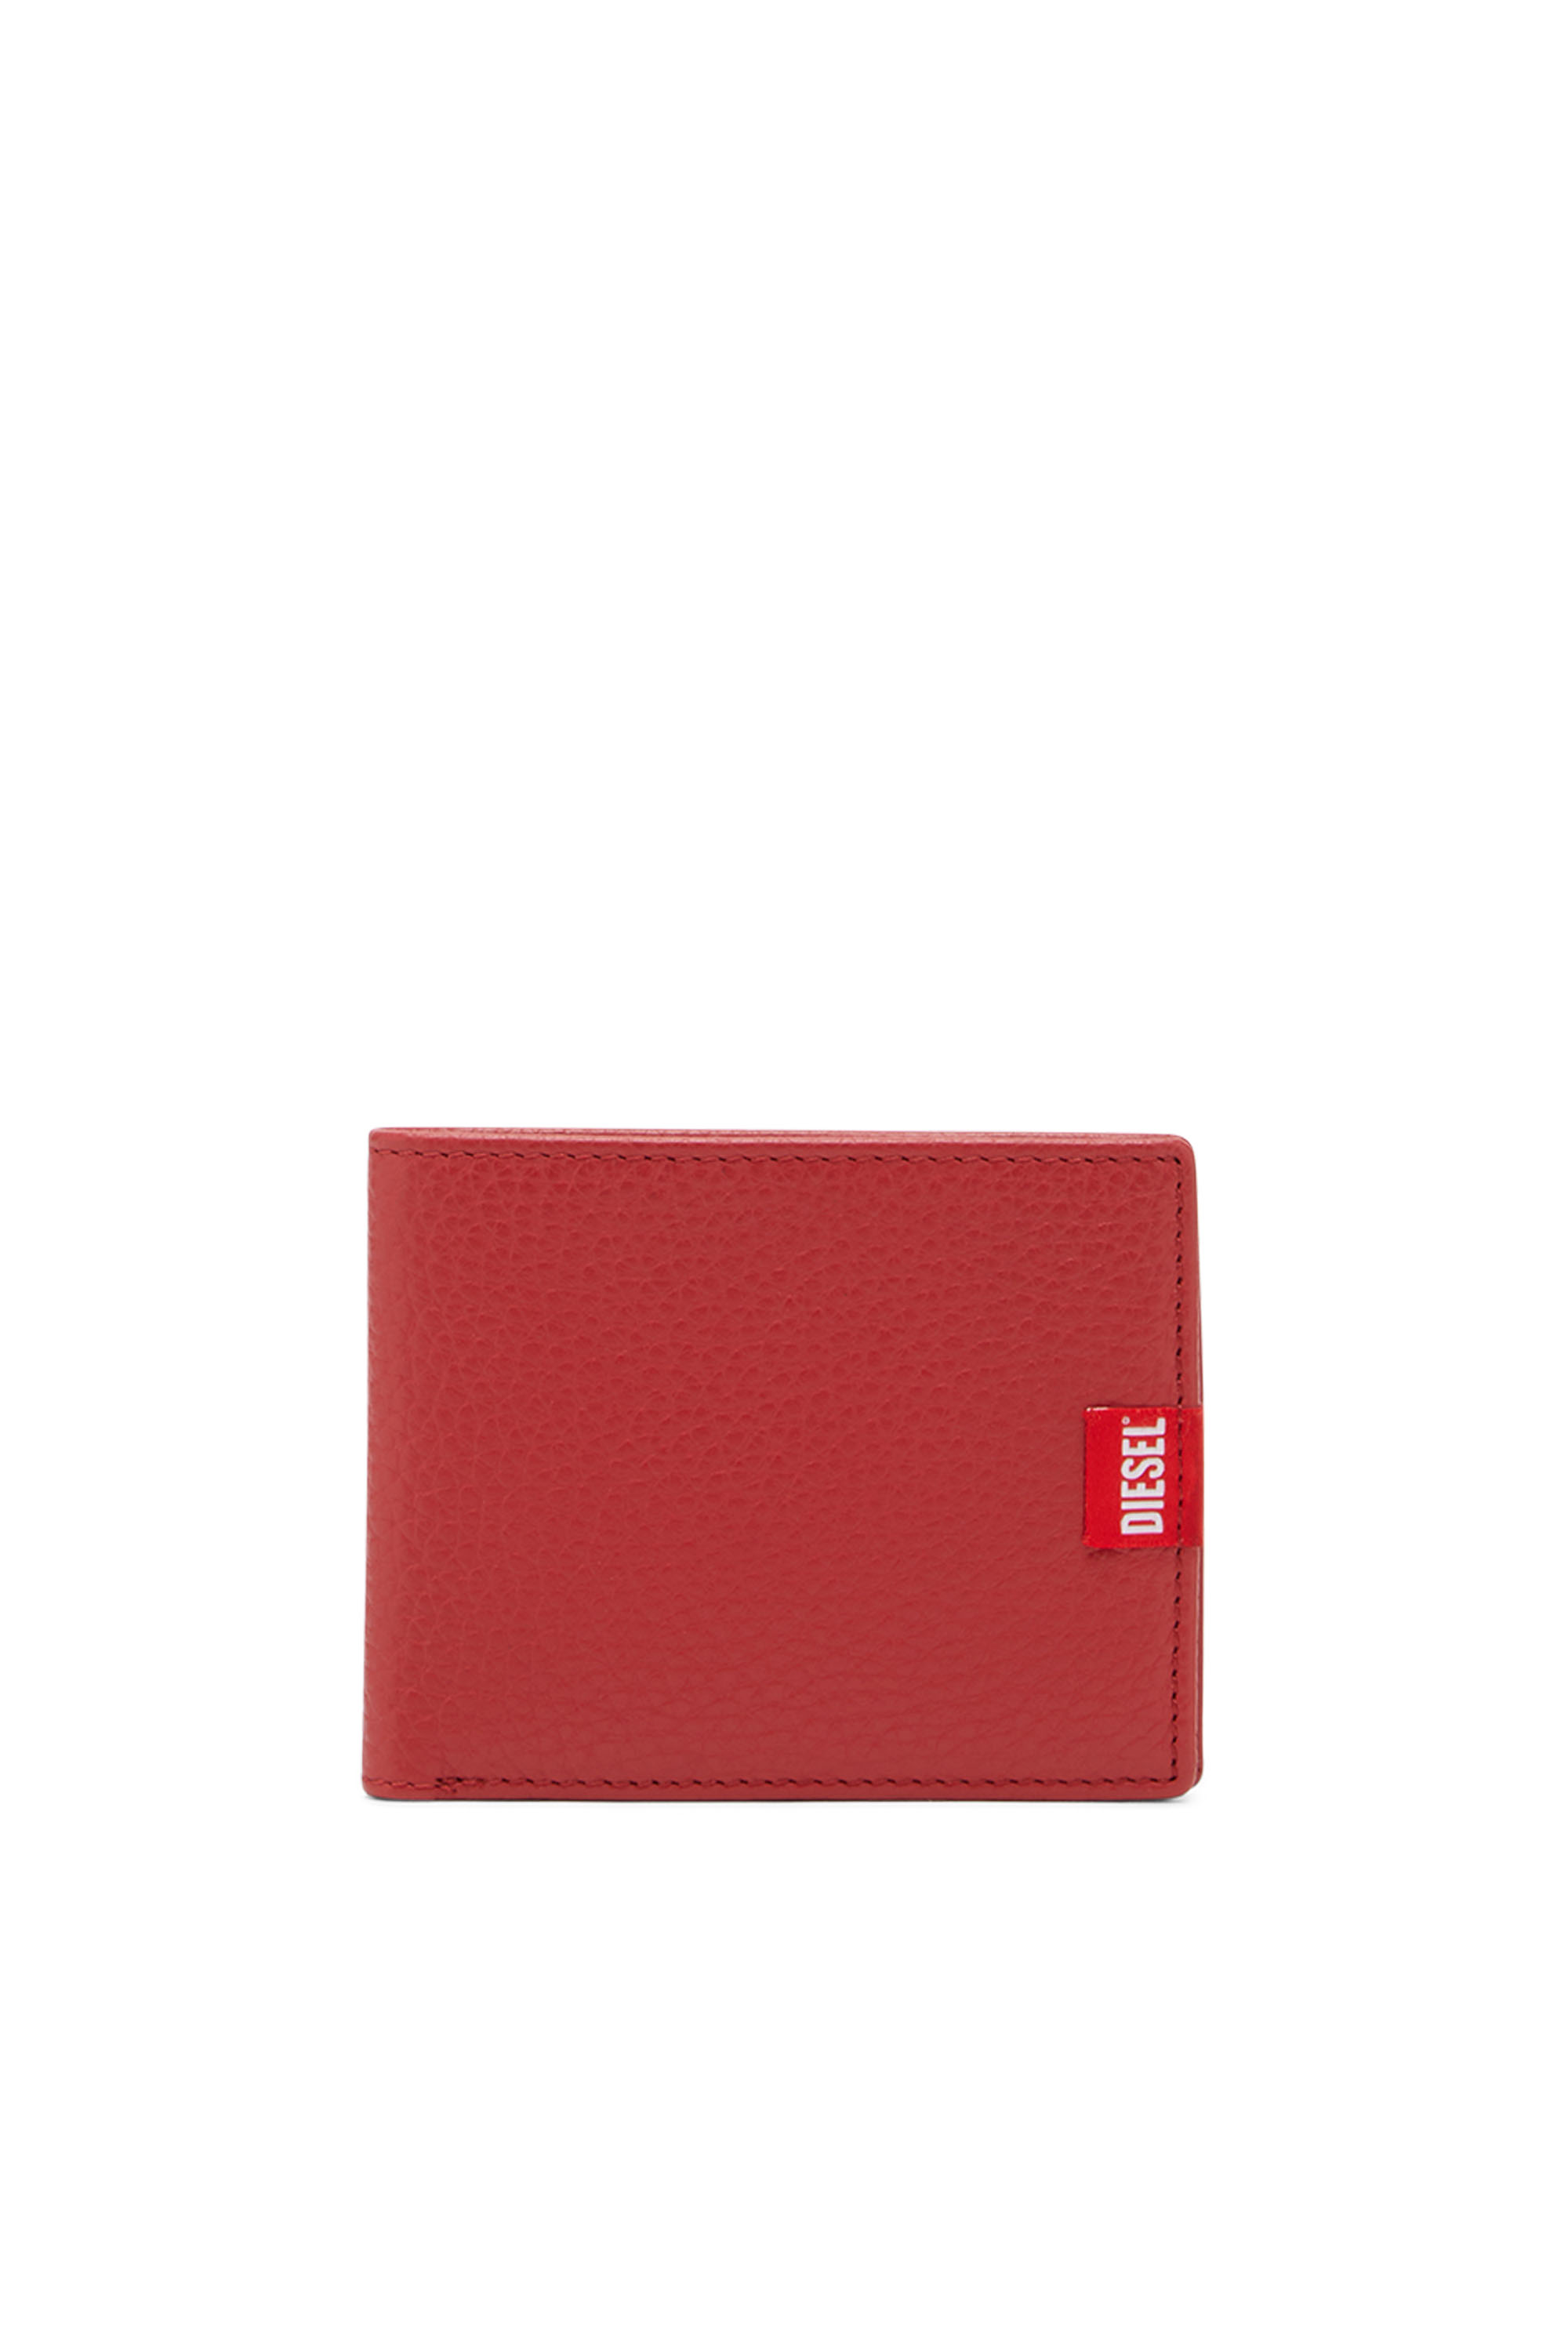 Diesel - Portafoglio a libro in pelle con etichetta con logo rossa - Portafogli Piccoli - Uomo - Rosso